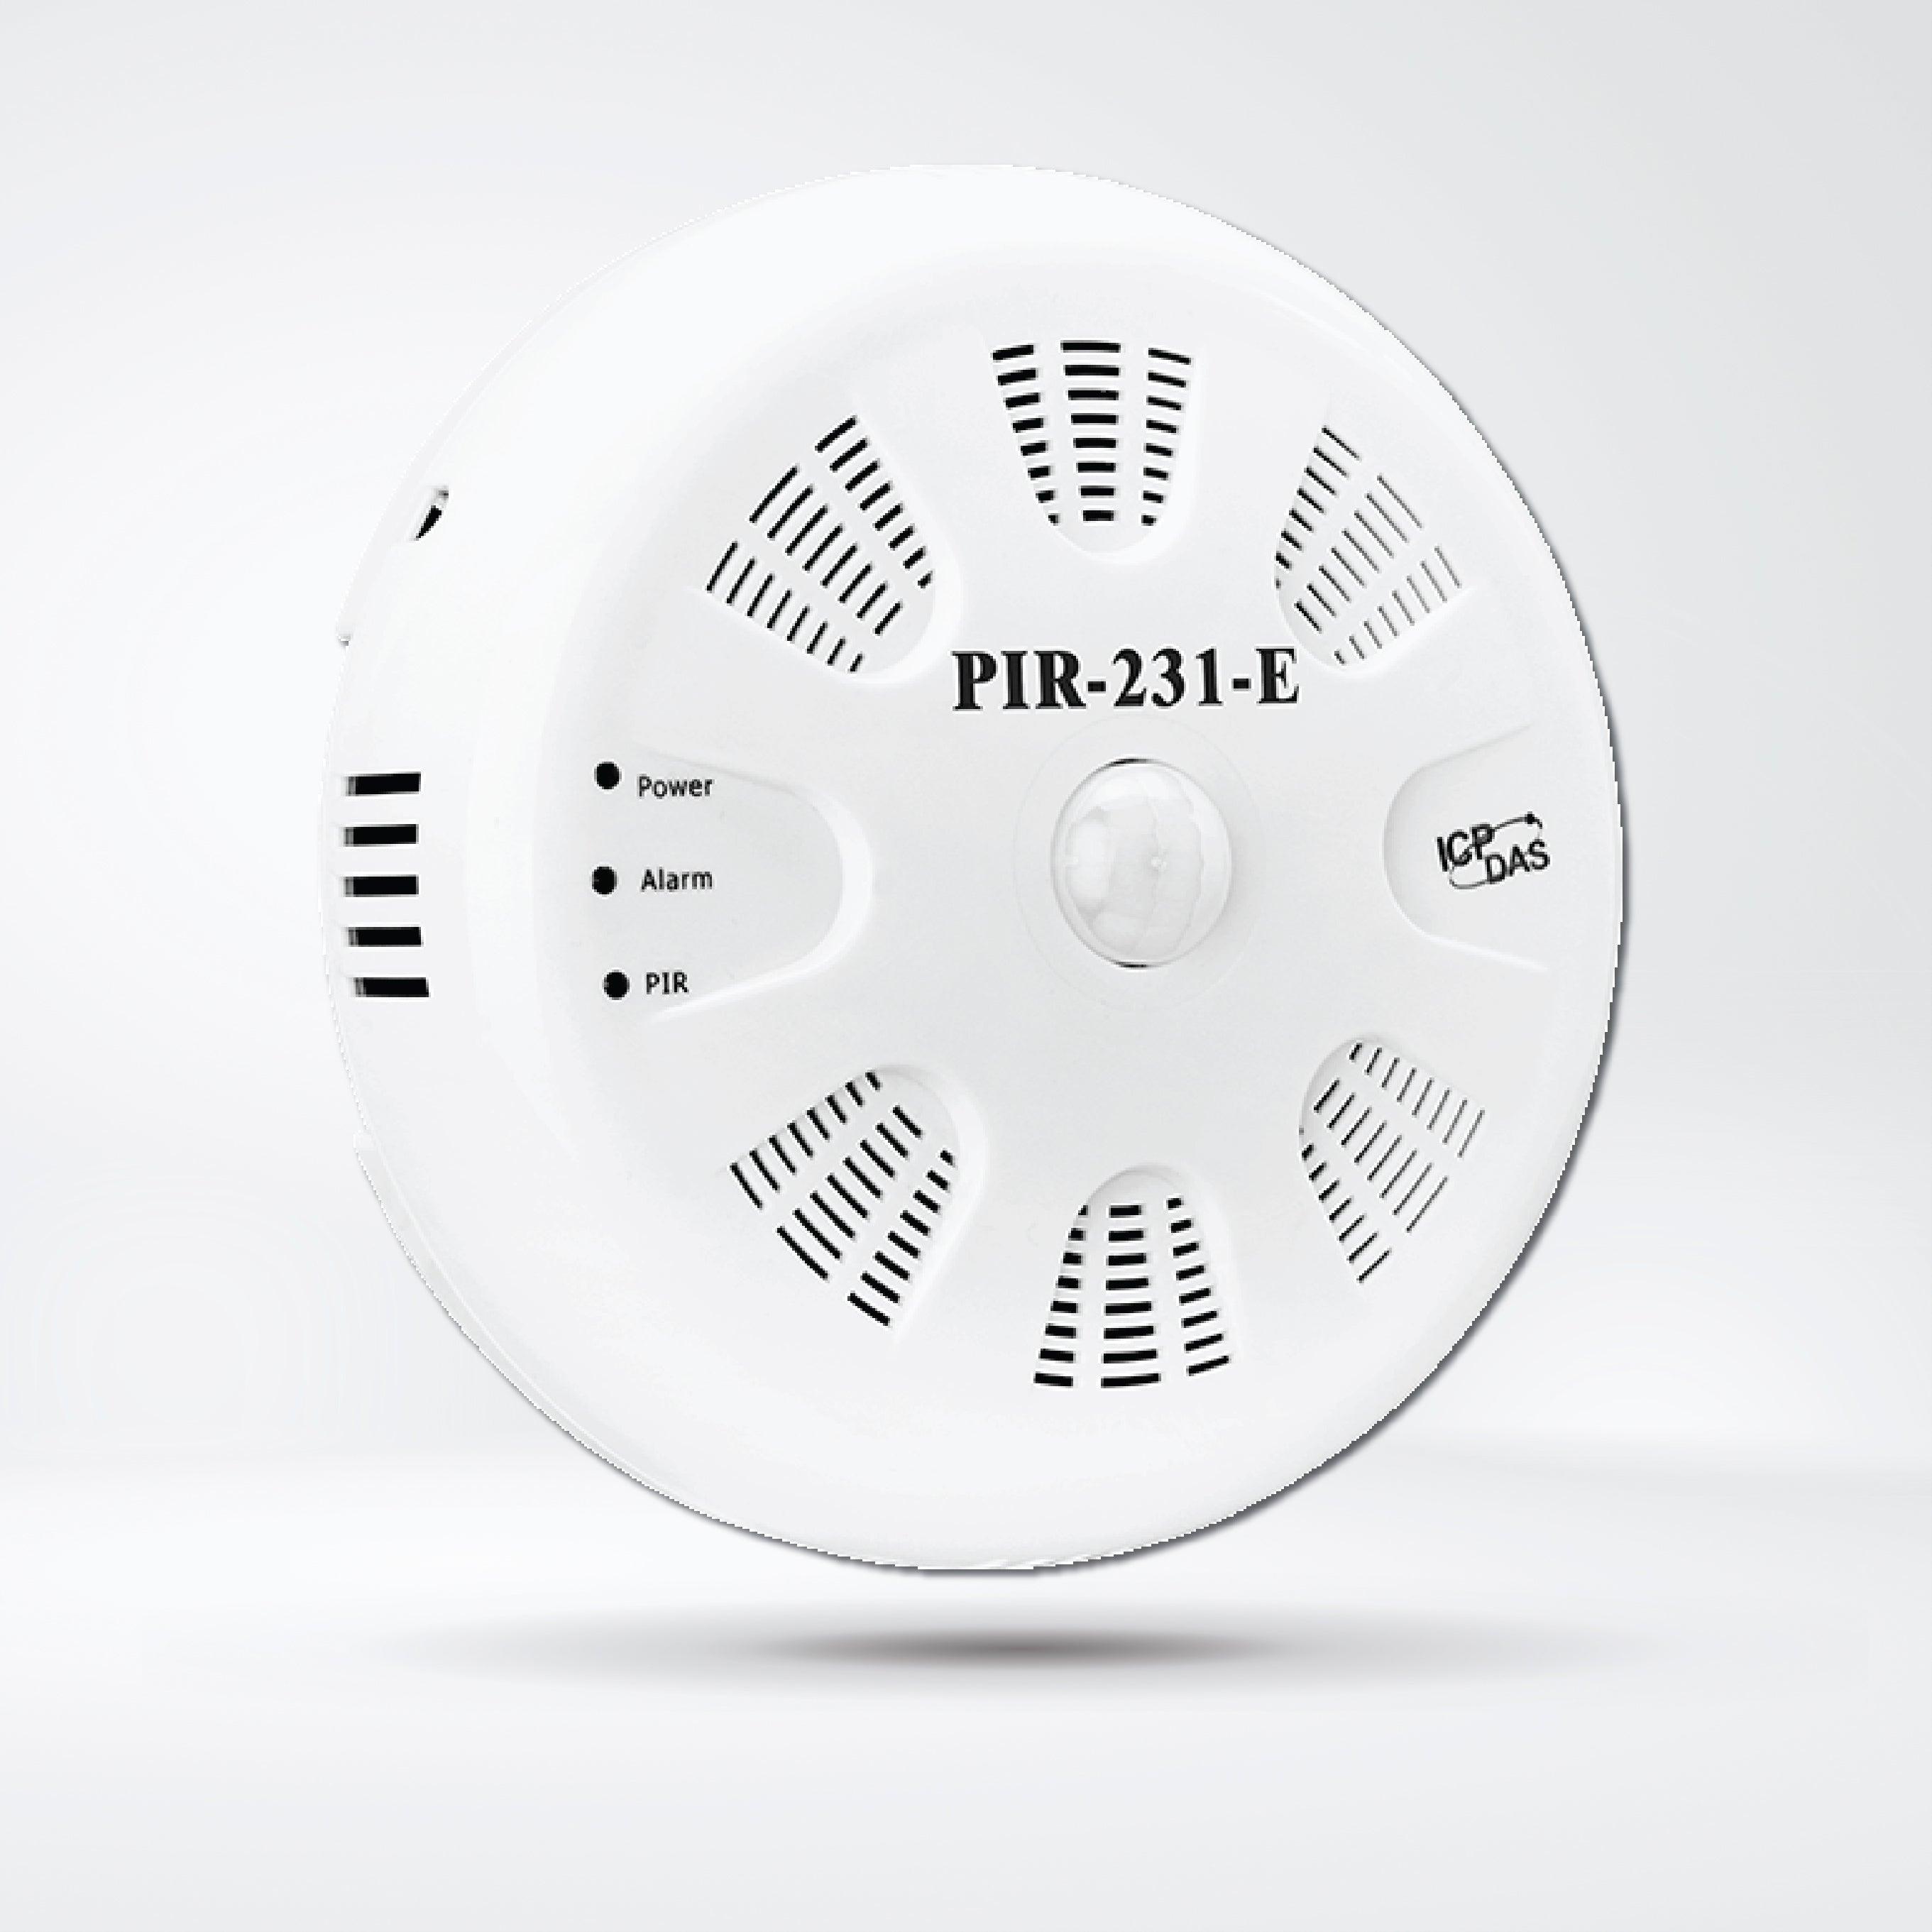 PIR-231-E PIR Motion Sensor (10m), Temperature and Humidity Sensor Module - Riverplus